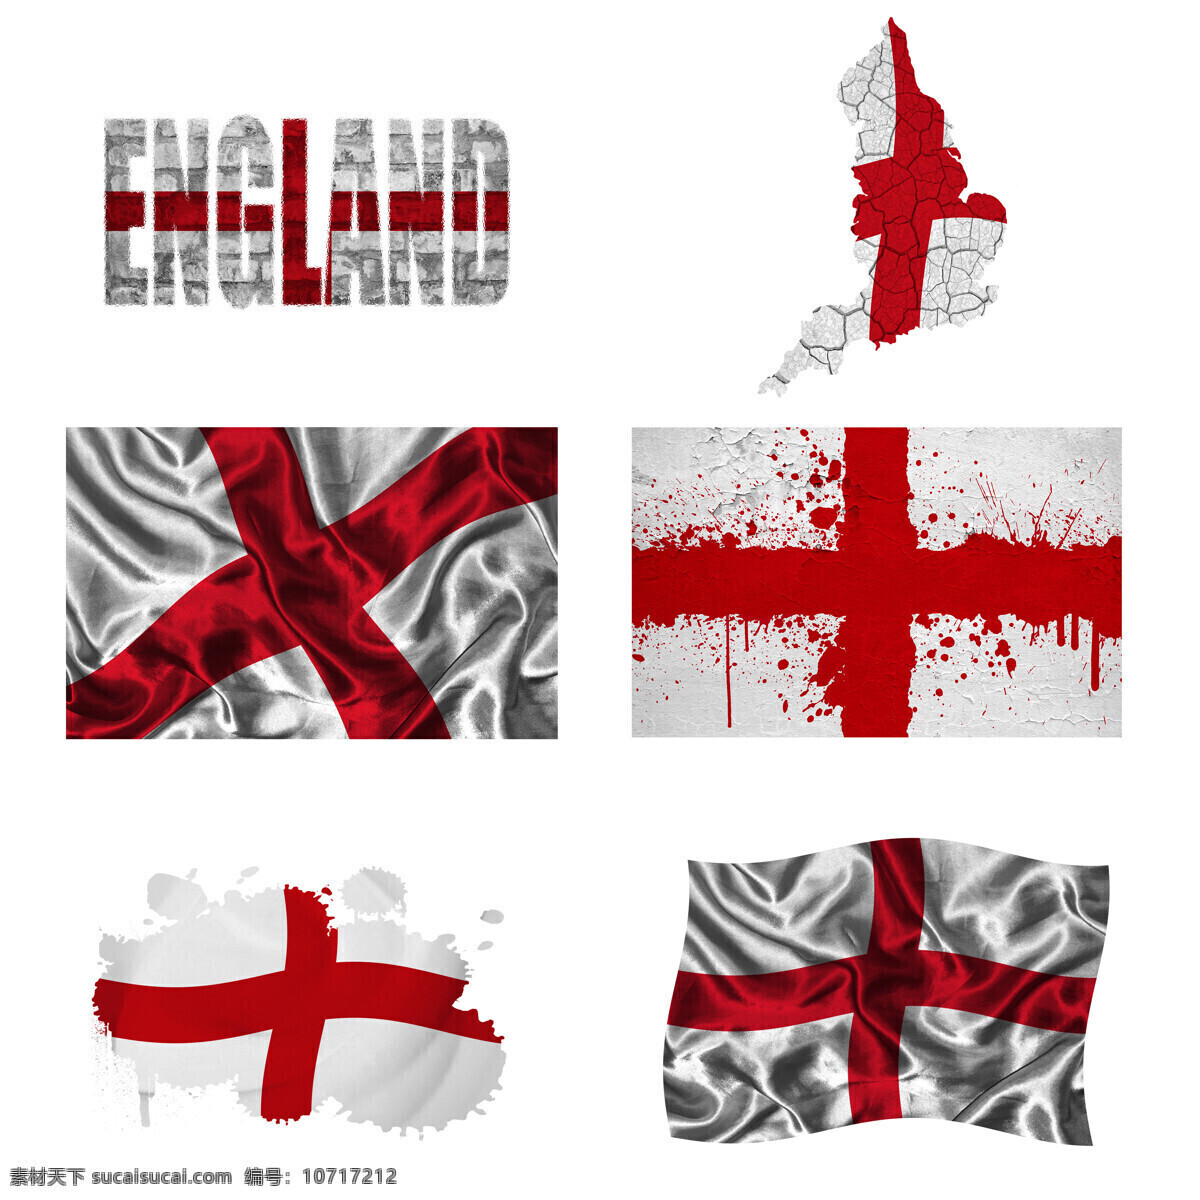 英格兰 地图 国旗 英格兰国旗 旗帜 国旗图案 其他类别 生活百科 白色